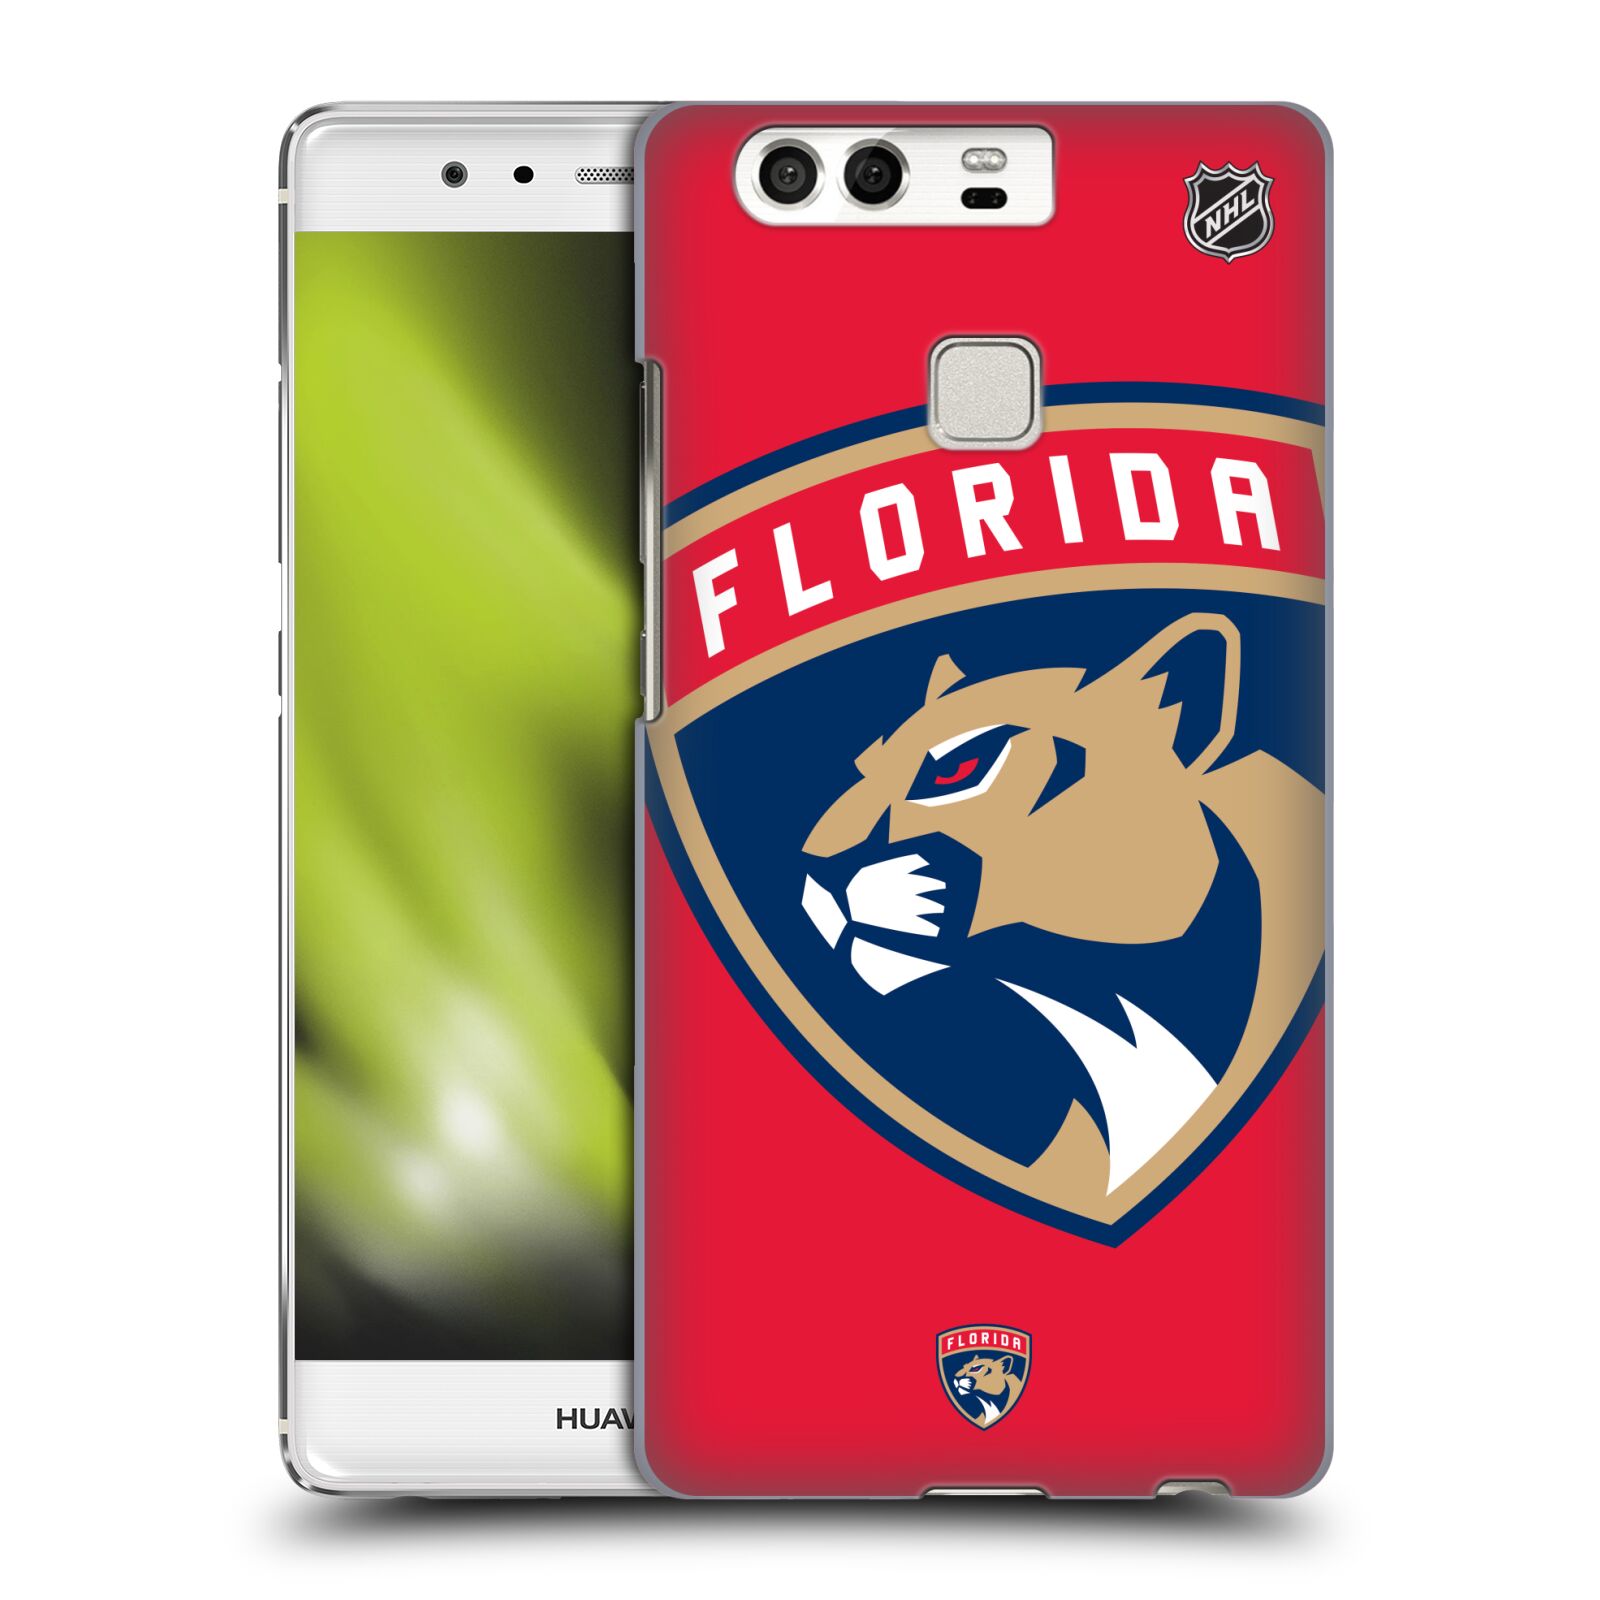 Pouzdro na mobil Huawei P9 / P9 DUAL SIM - HEAD CASE - Hokej NHL - Florida Panthers - Velký znak